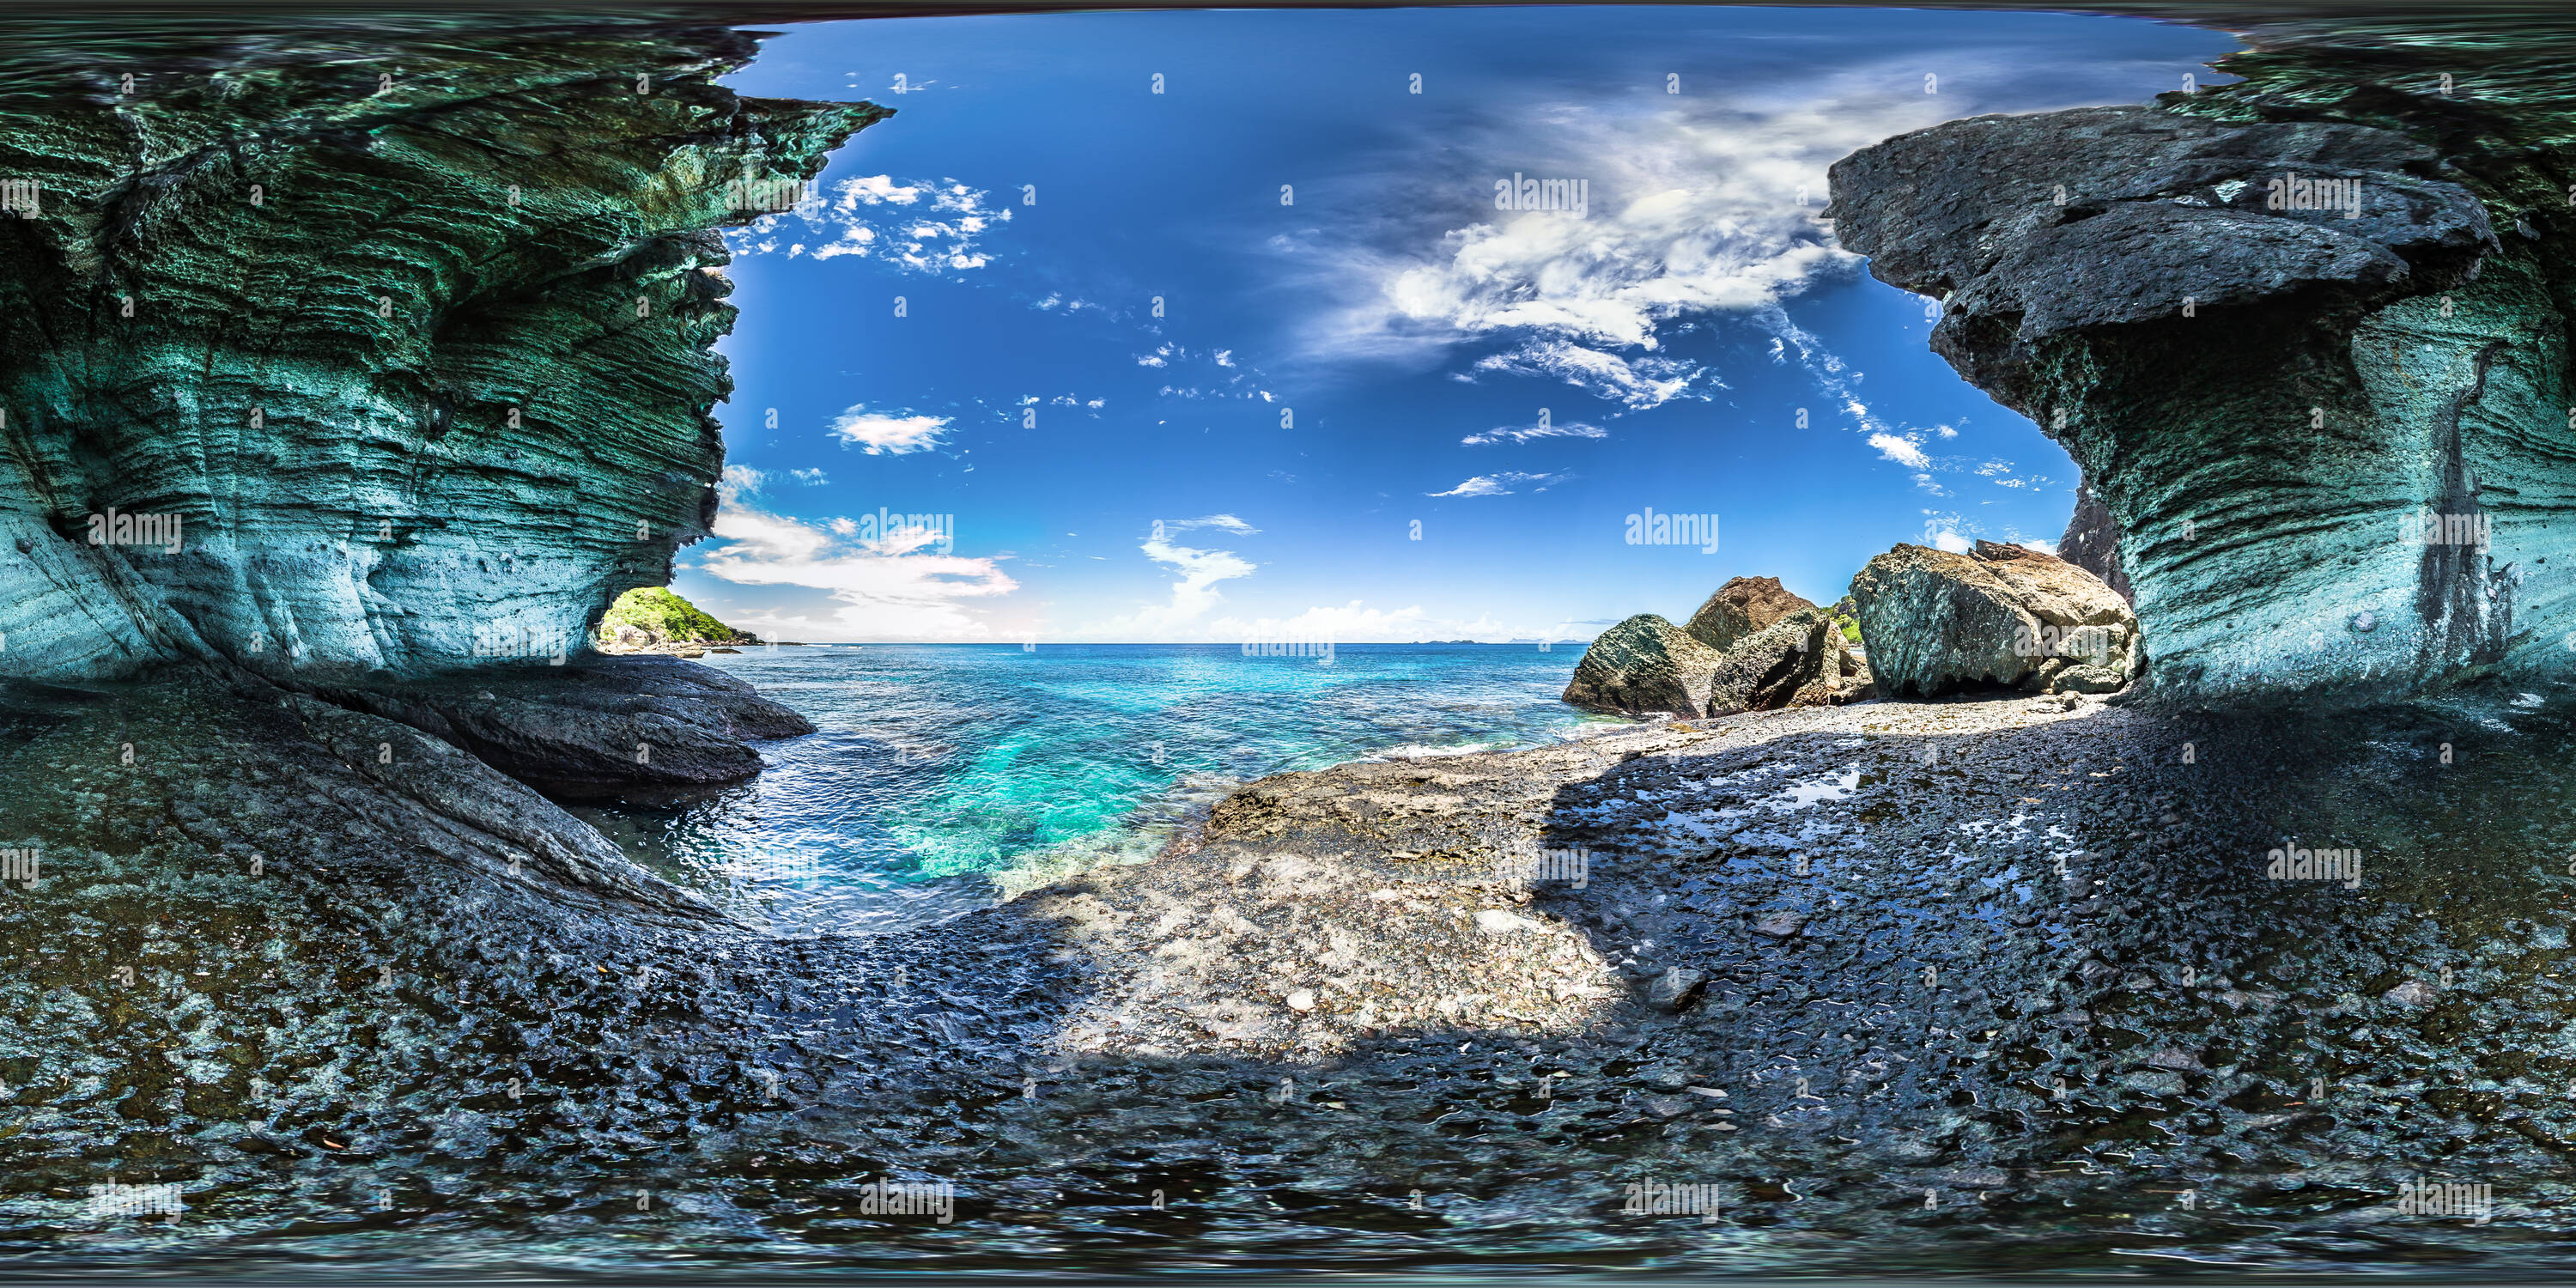 Visualizzazione panoramica a 360 gradi di Tom Hanks grotta - Cast Away Movie set - Monu Island - Isole Fidji